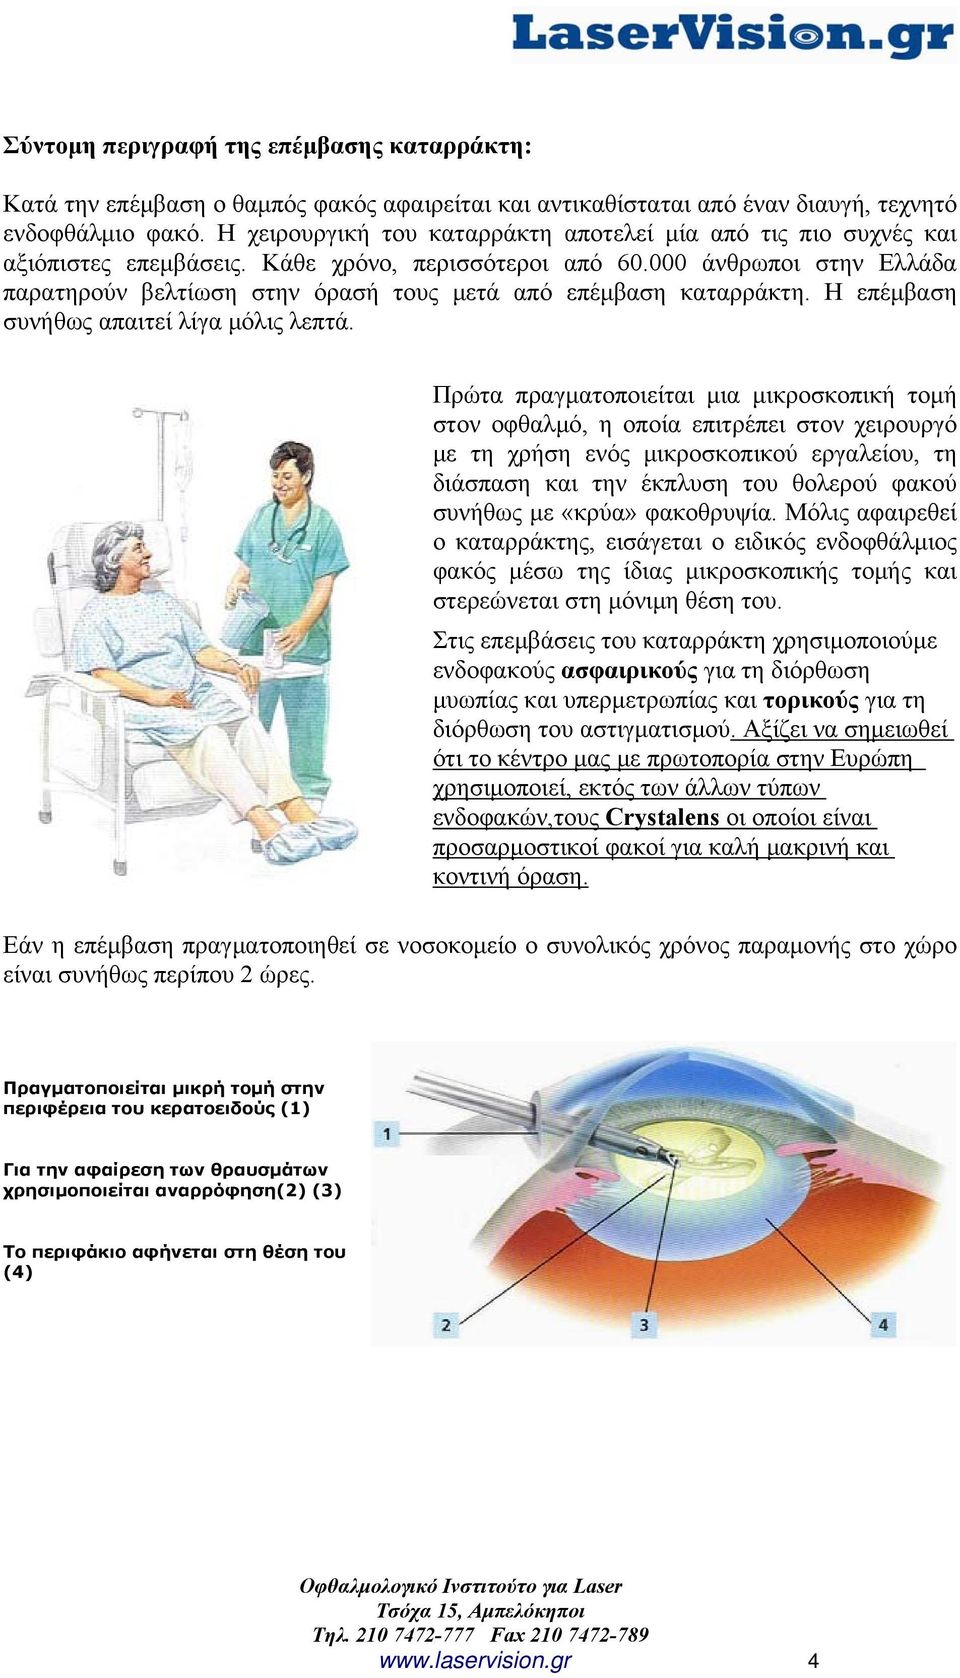 000 άνθρωποι στην Ελλάδα παρατηρούν βελτίωση στην όρασή τους μετά από επέμβαση καταρράκτη. Η επέμβαση συνήθως απαιτεί λίγα μόλις λεπτά.